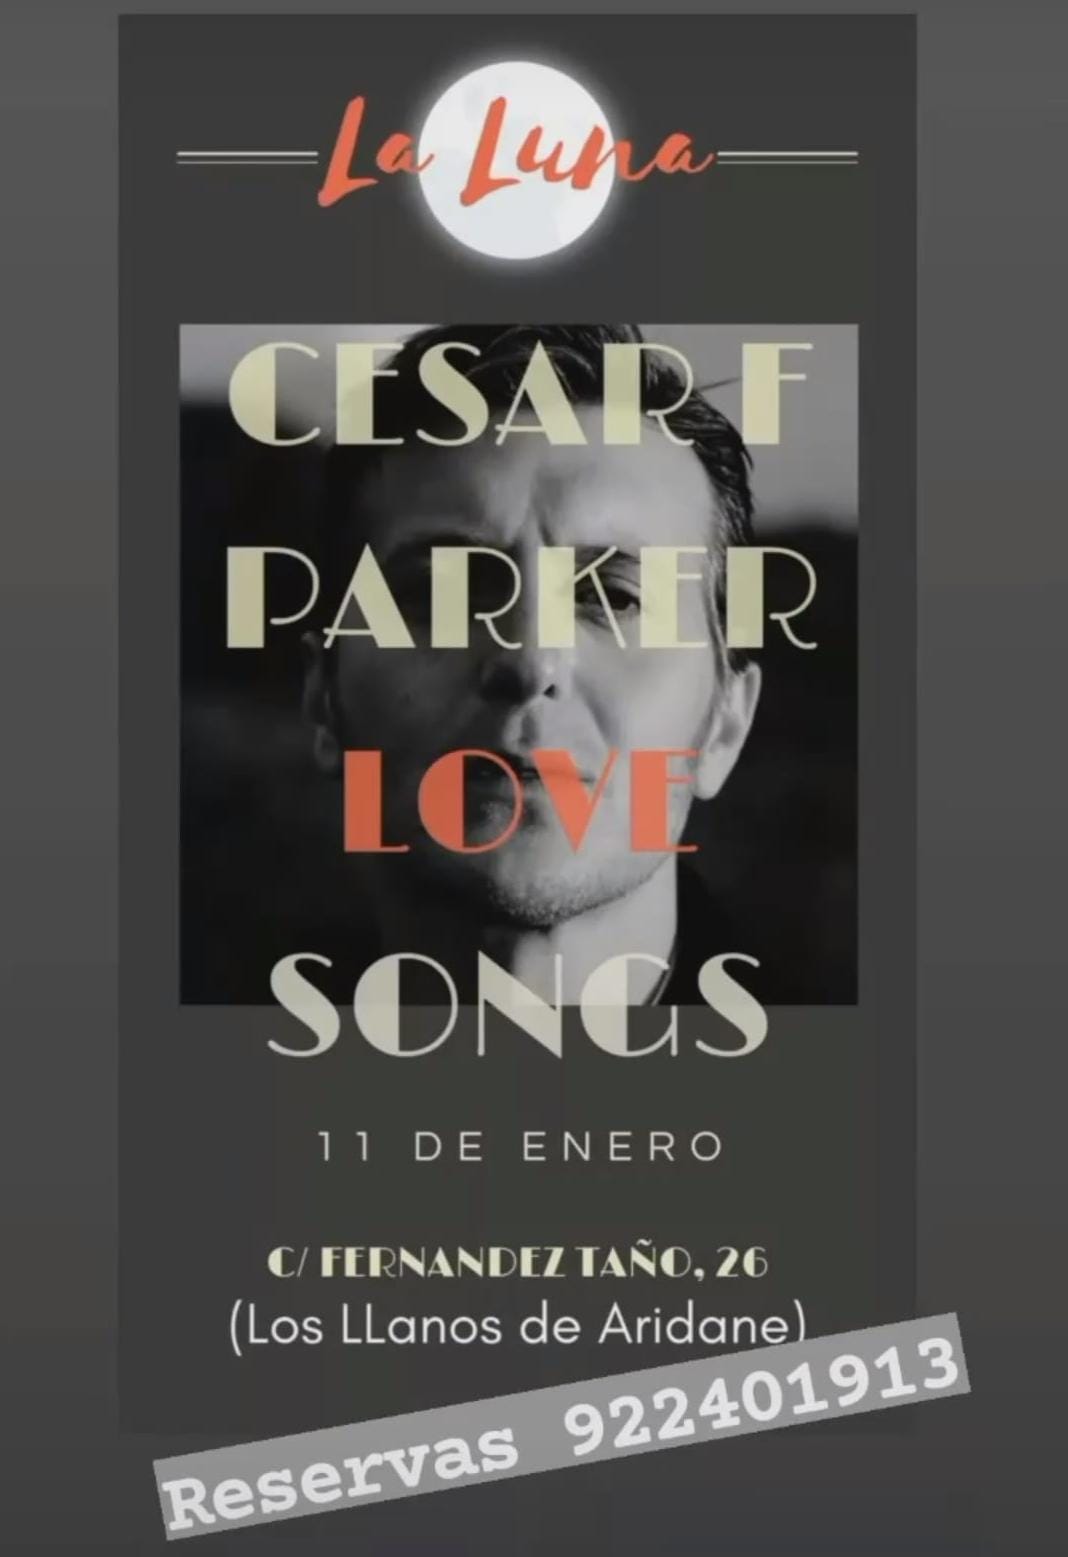 César F Parker love songs